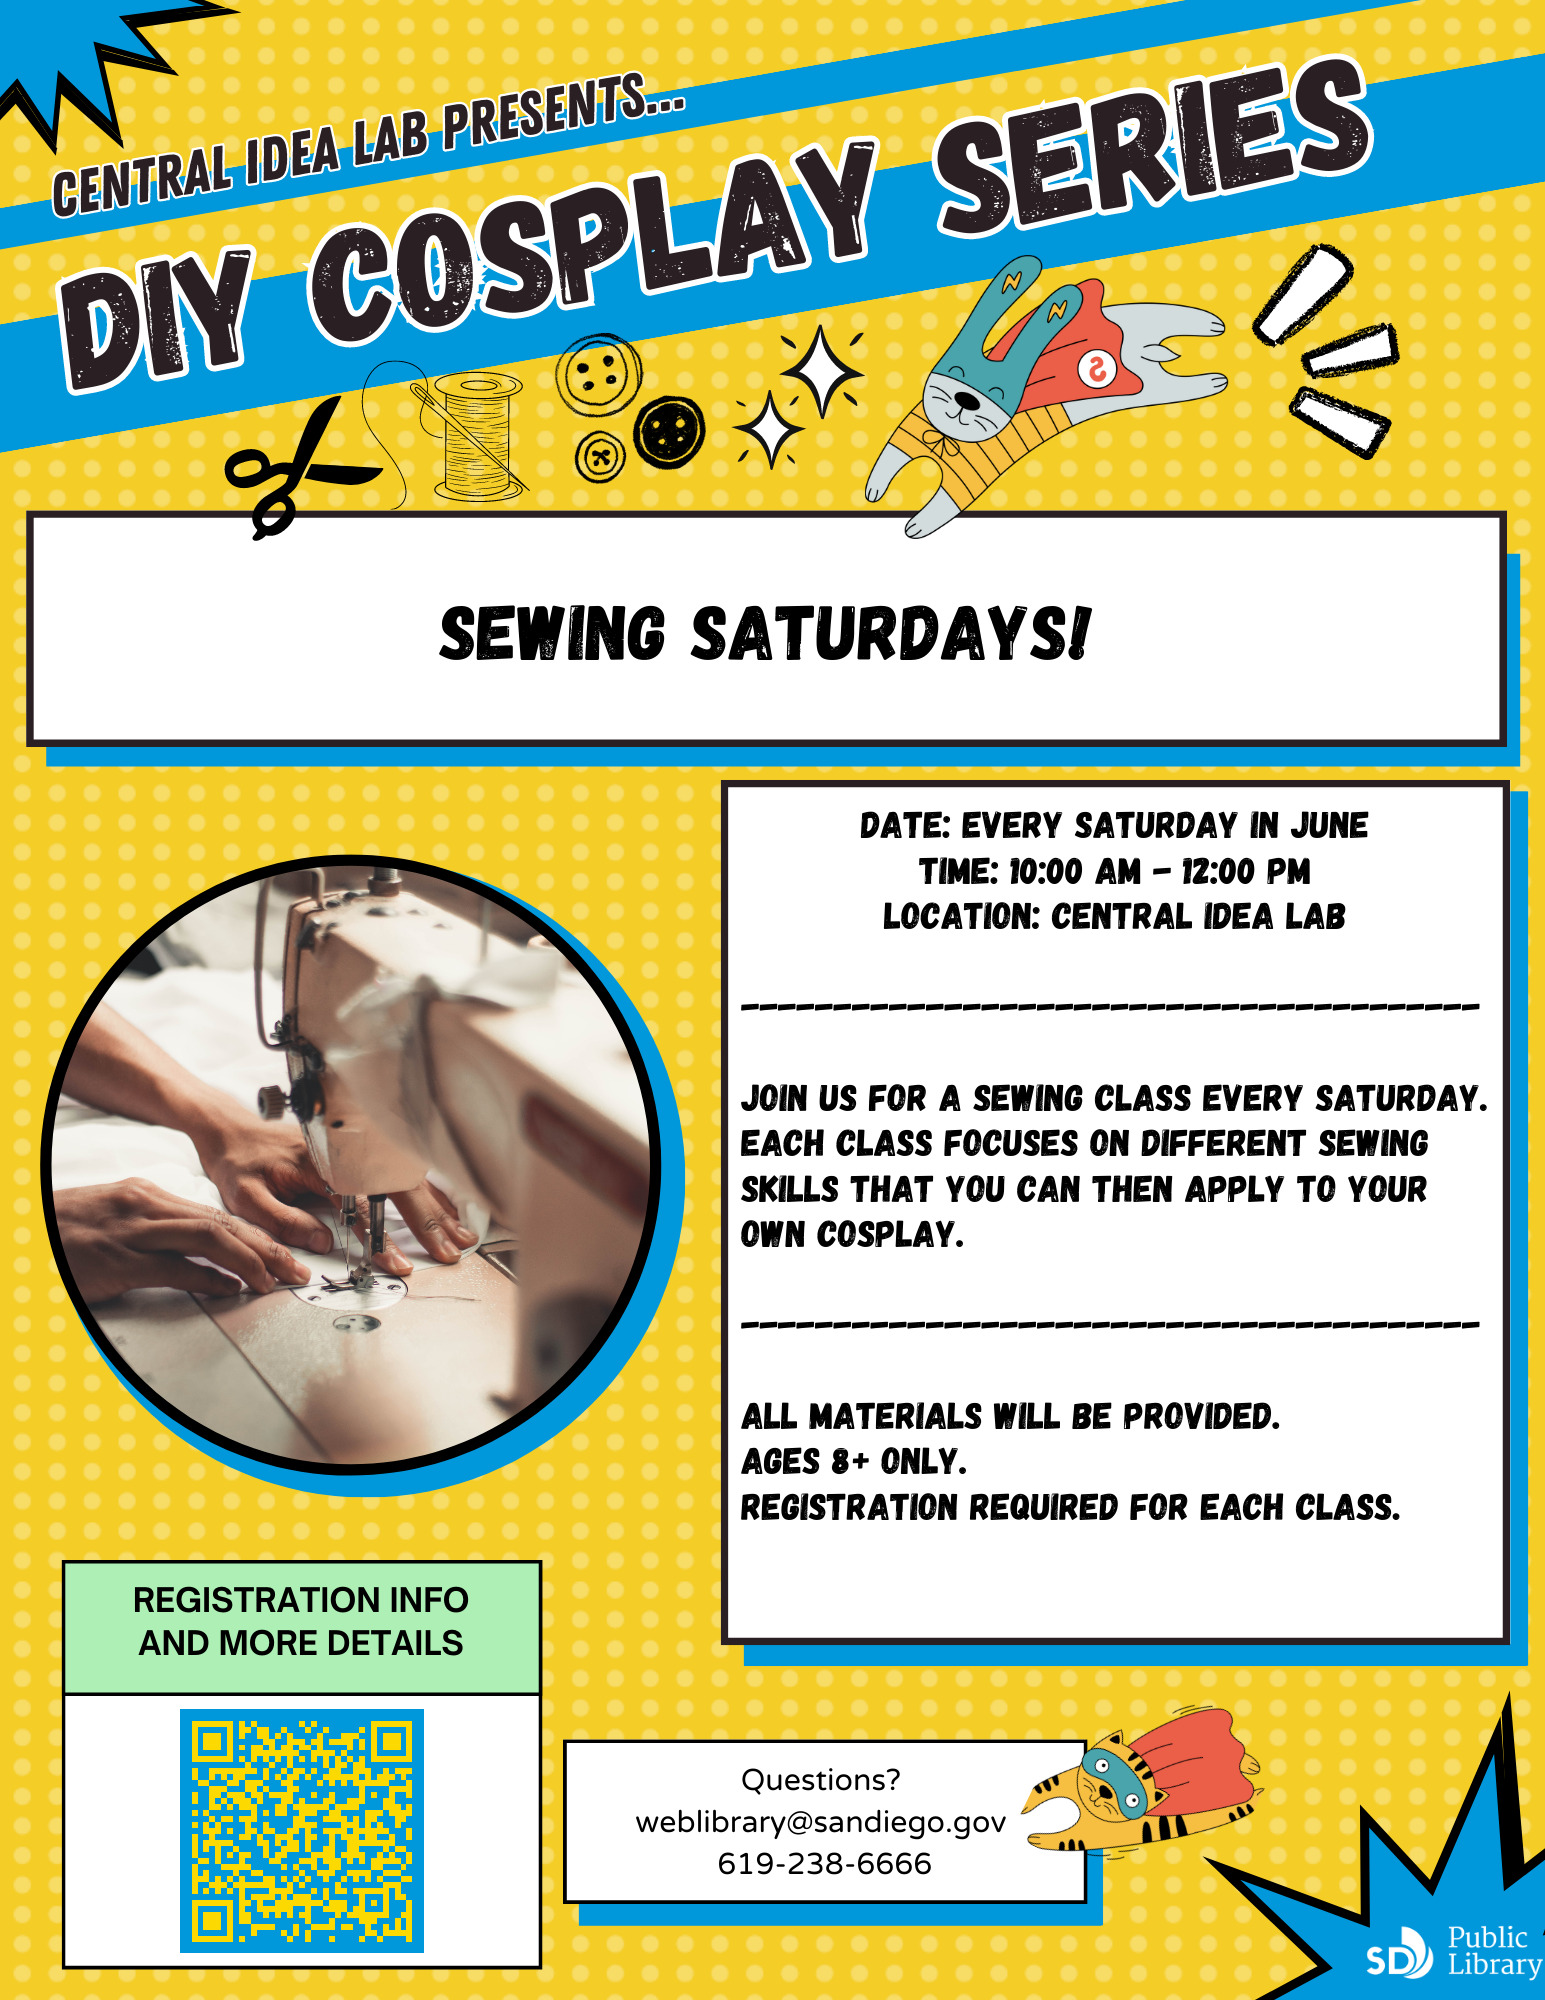 DIY Cosplay Series: Sewing Saturdays